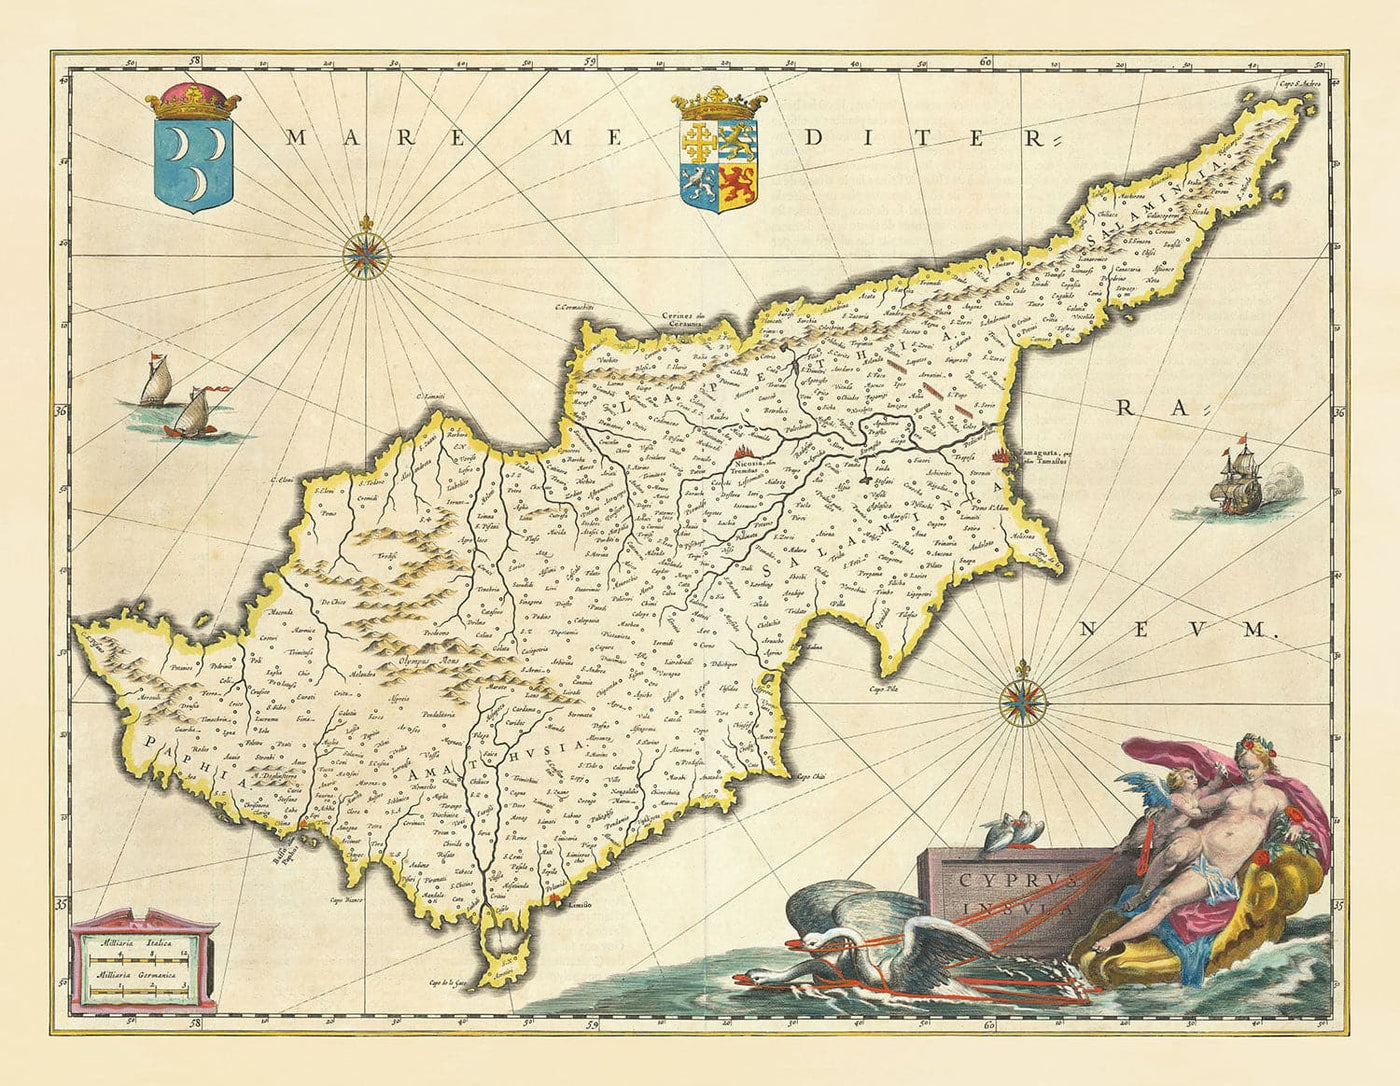 Mapa antiguo de Chipre por Willem Blaeu, 1640 - Nicosia, Kyrenia, Famagusta, Limassol, Pafos, Larnaca